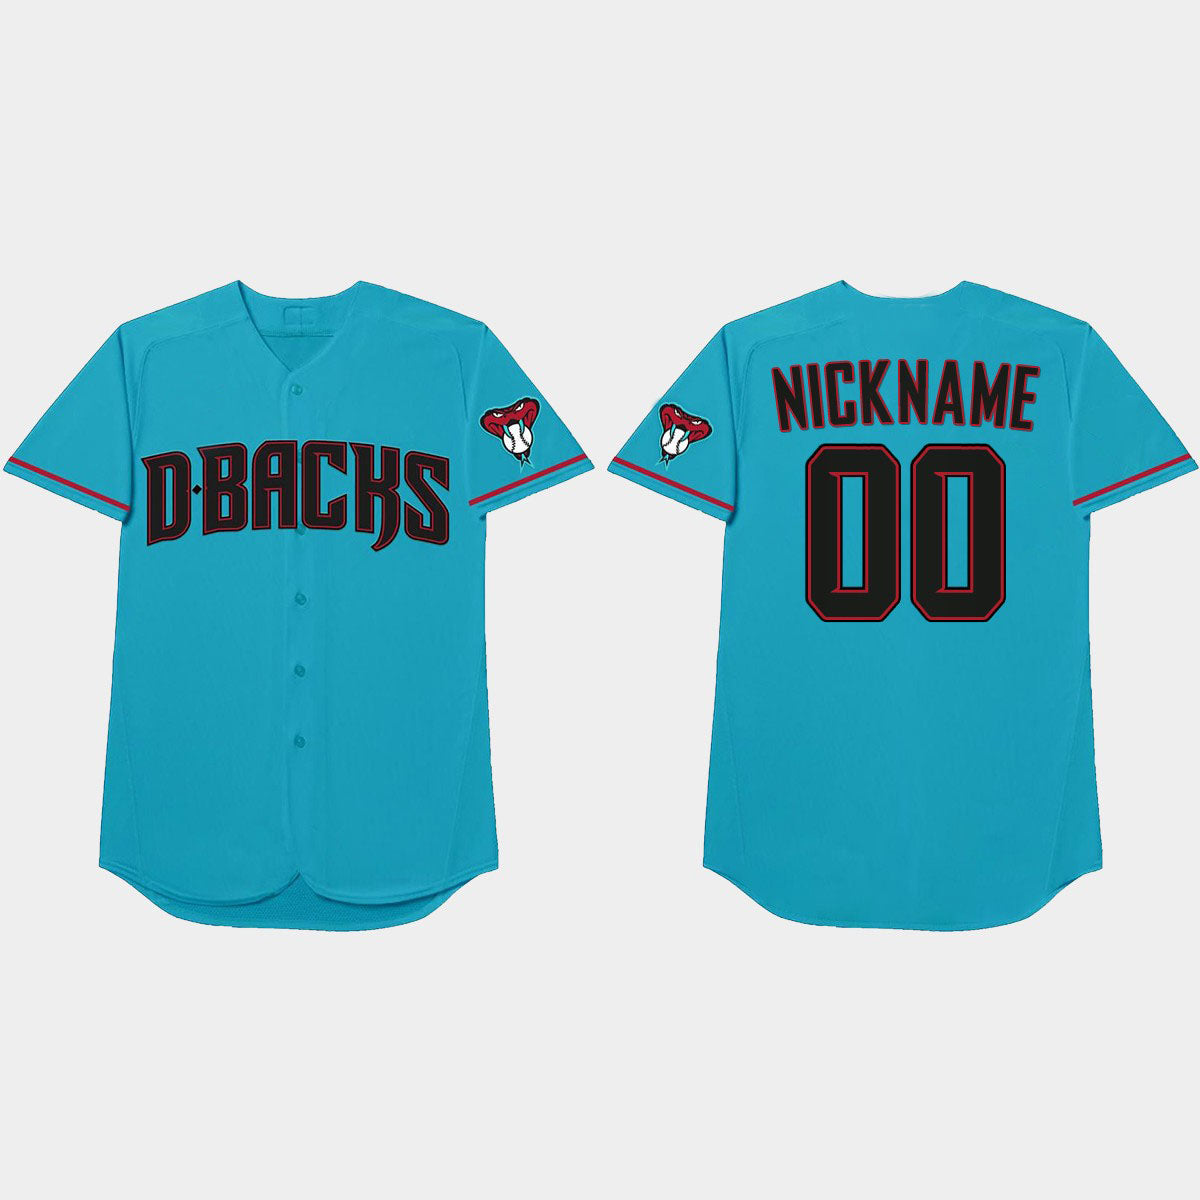 dbacks custom jerseys